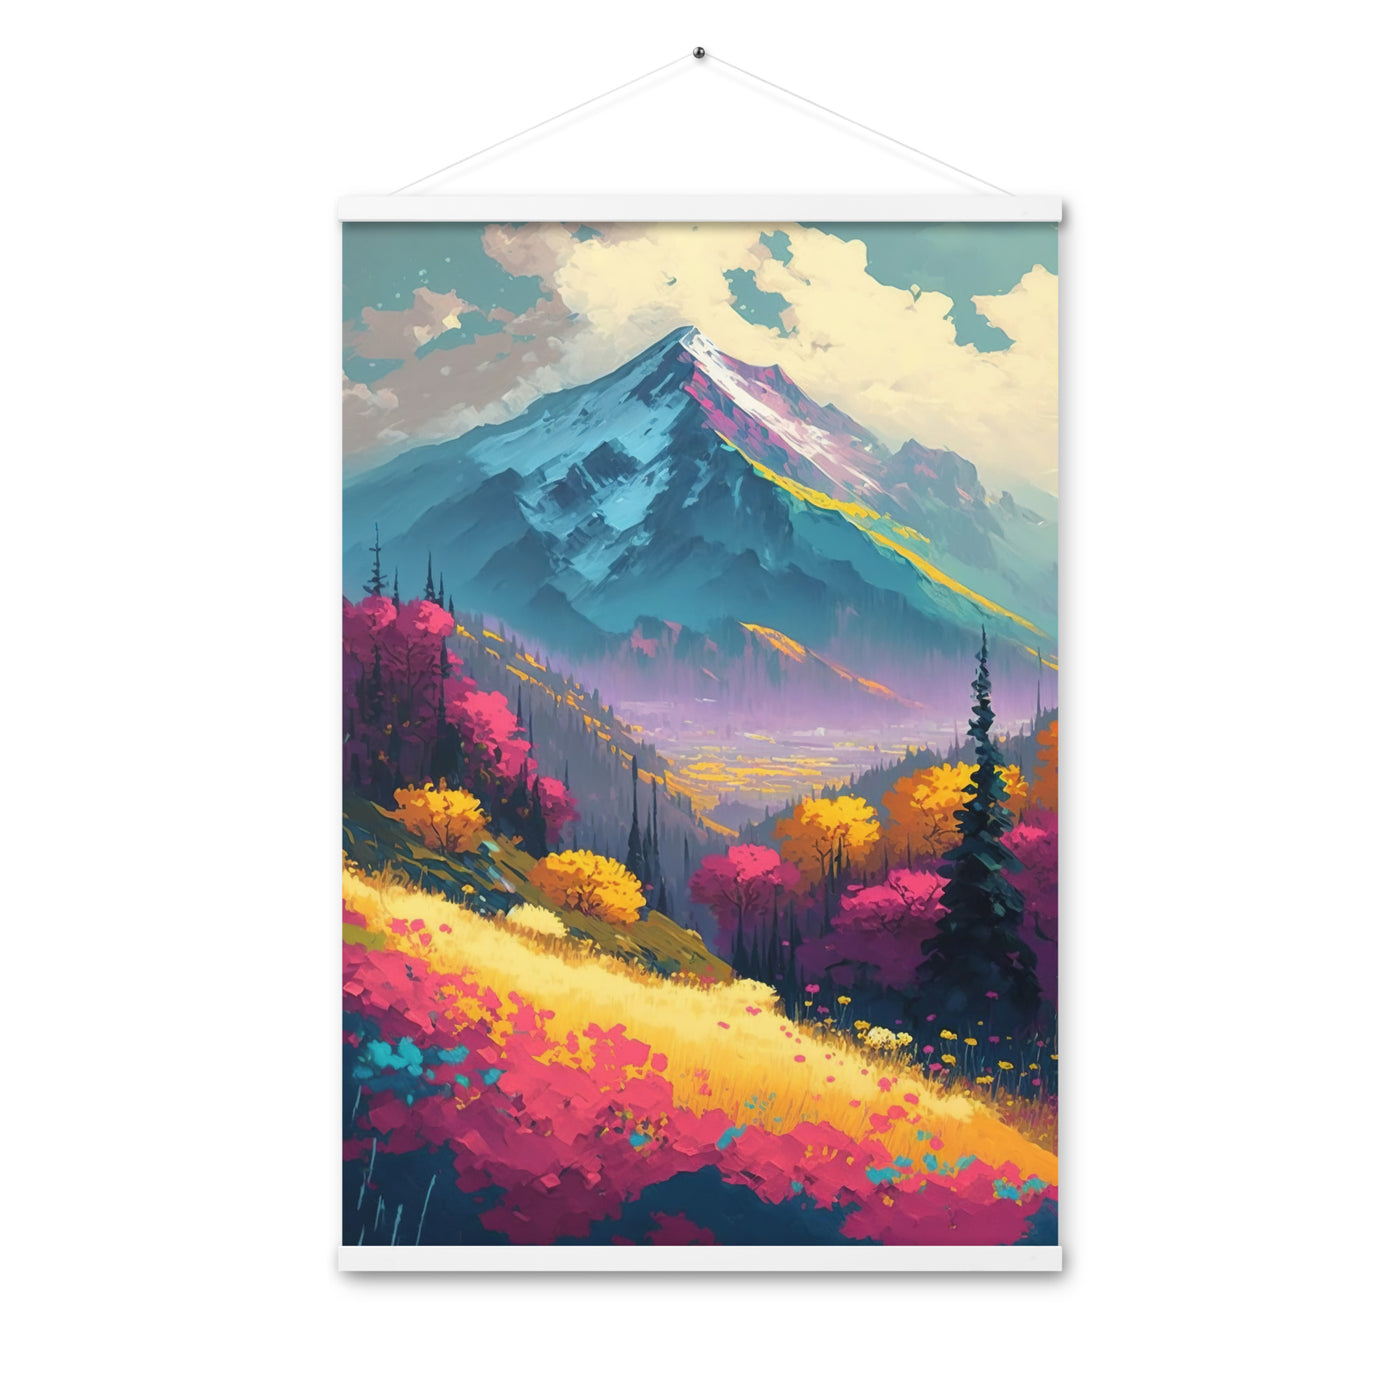 Berge, pinke und gelbe Bäume, sowie Blumen - Farbige Malerei - Premium Poster mit Aufhängung berge xxx 61 x 91.4 cm